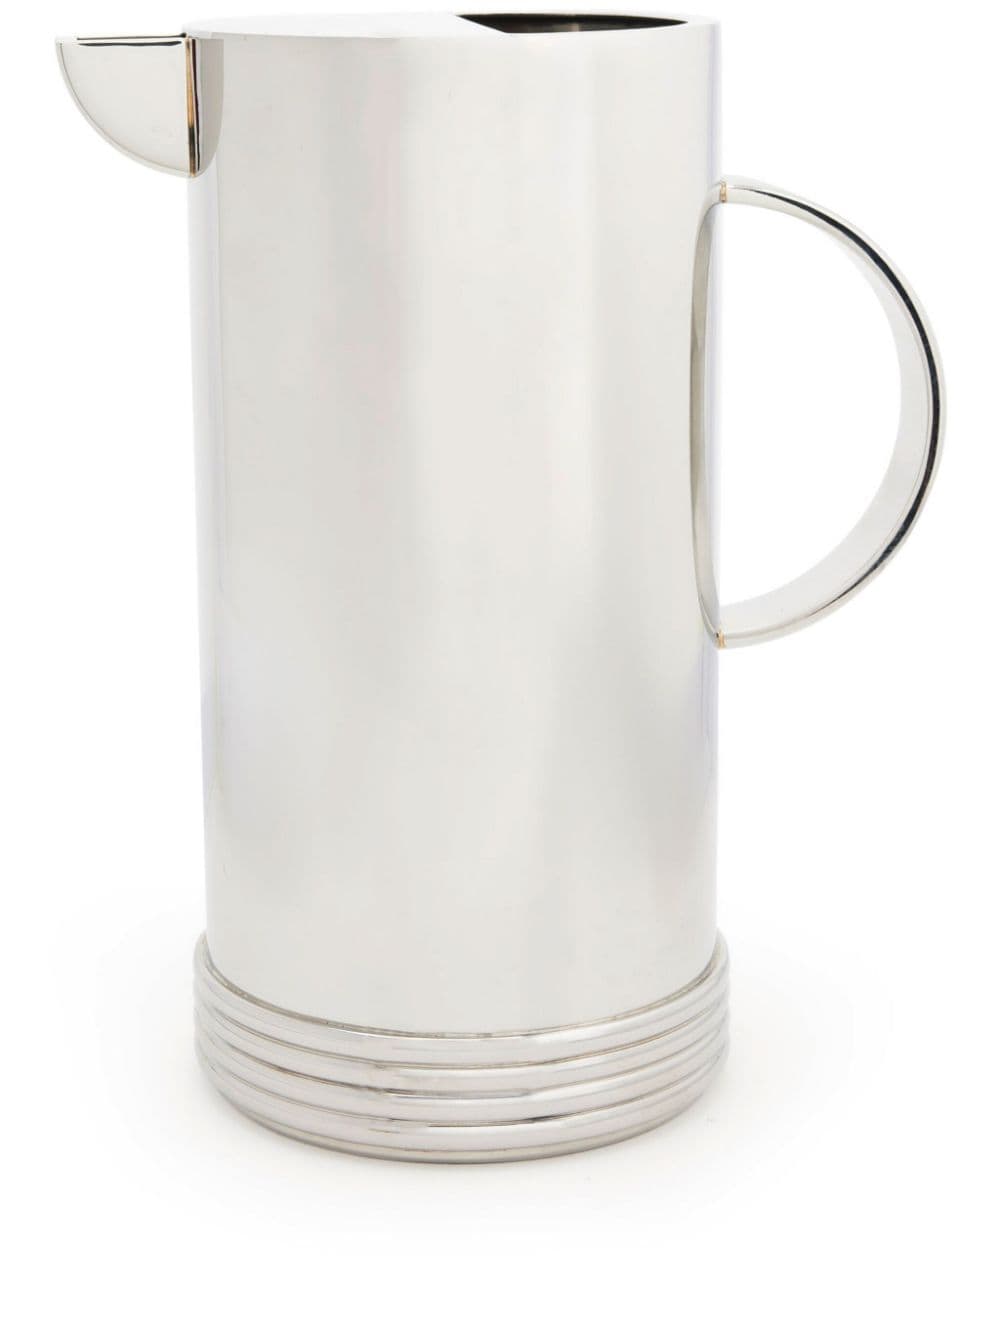 Ralph Lauren Home Thorpe stainless steel pitcher (17,1cm) - Silver von Ralph Lauren Home